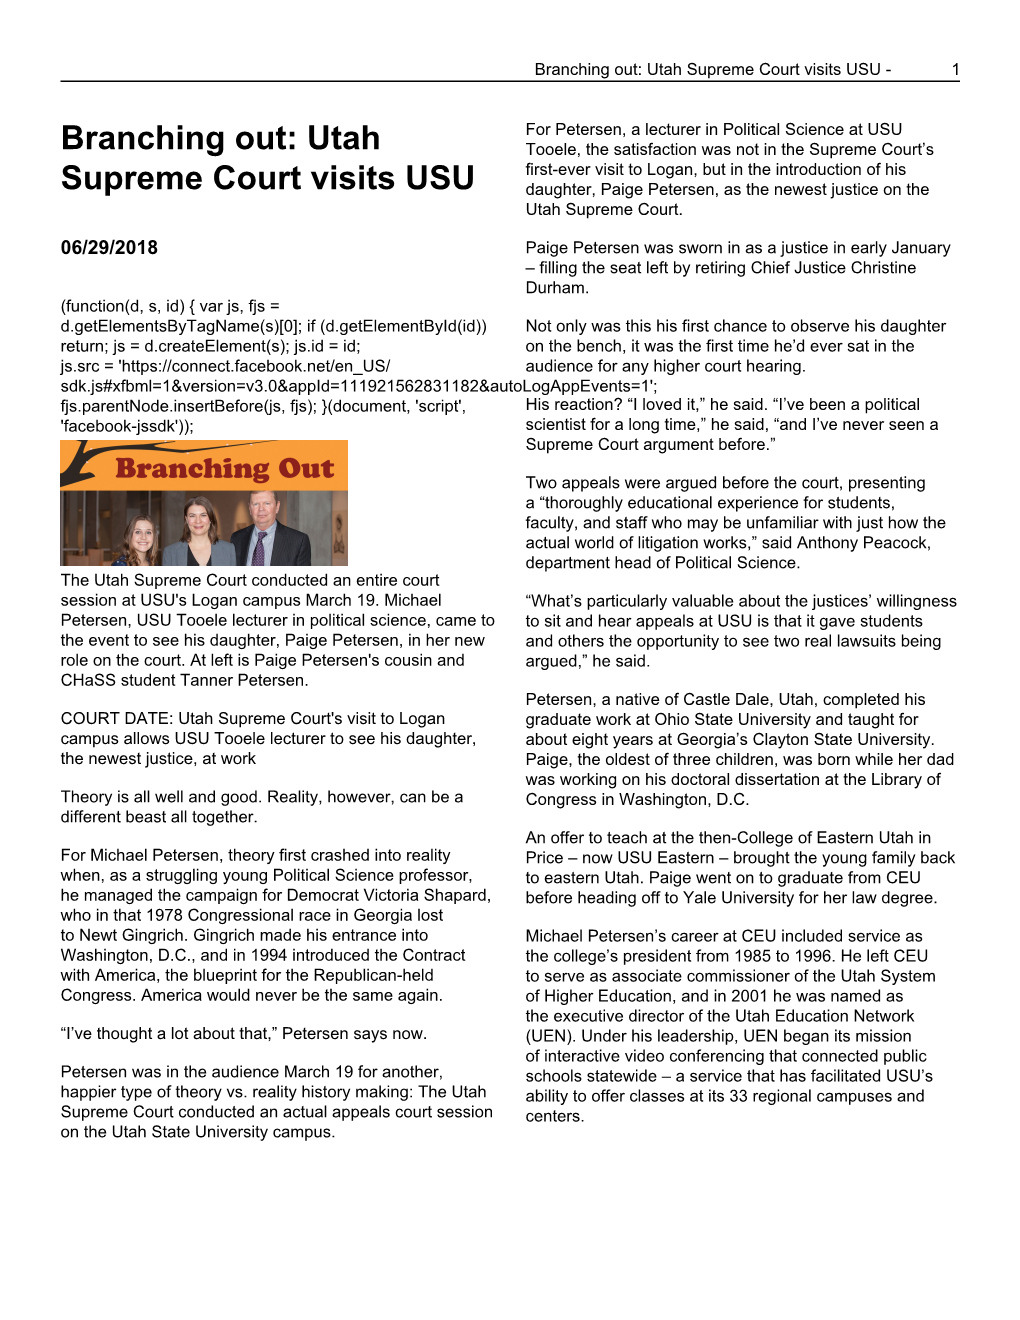 Branching Out: Utah Supreme Court Visits USU - 1